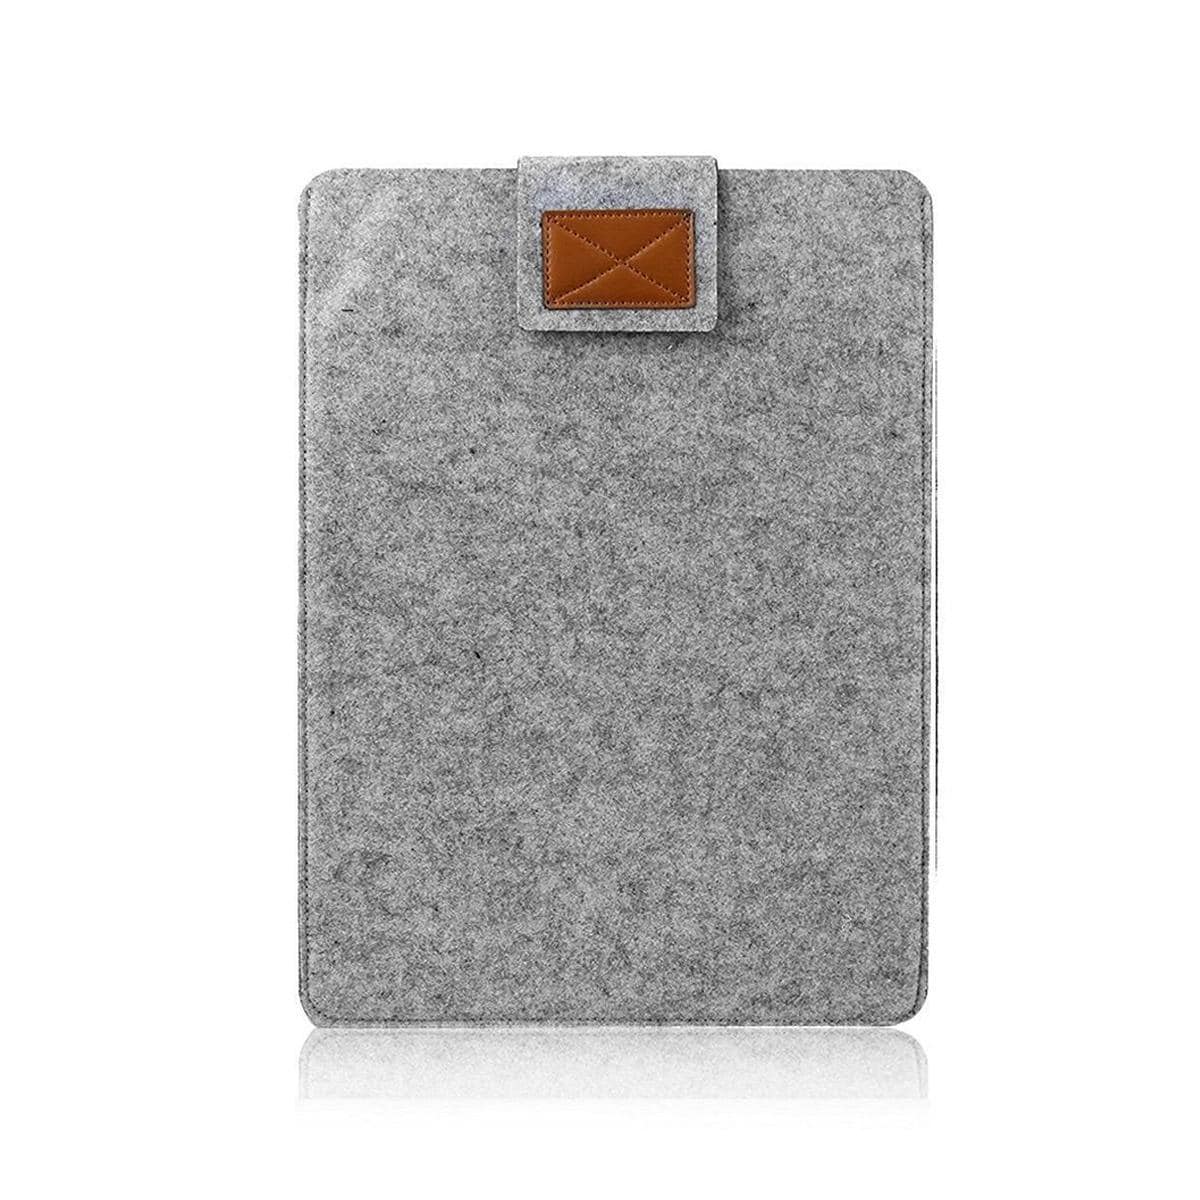 Laptopfodral 13 tum till Macbook Air / Pro 13 Ullfilt grå Grå